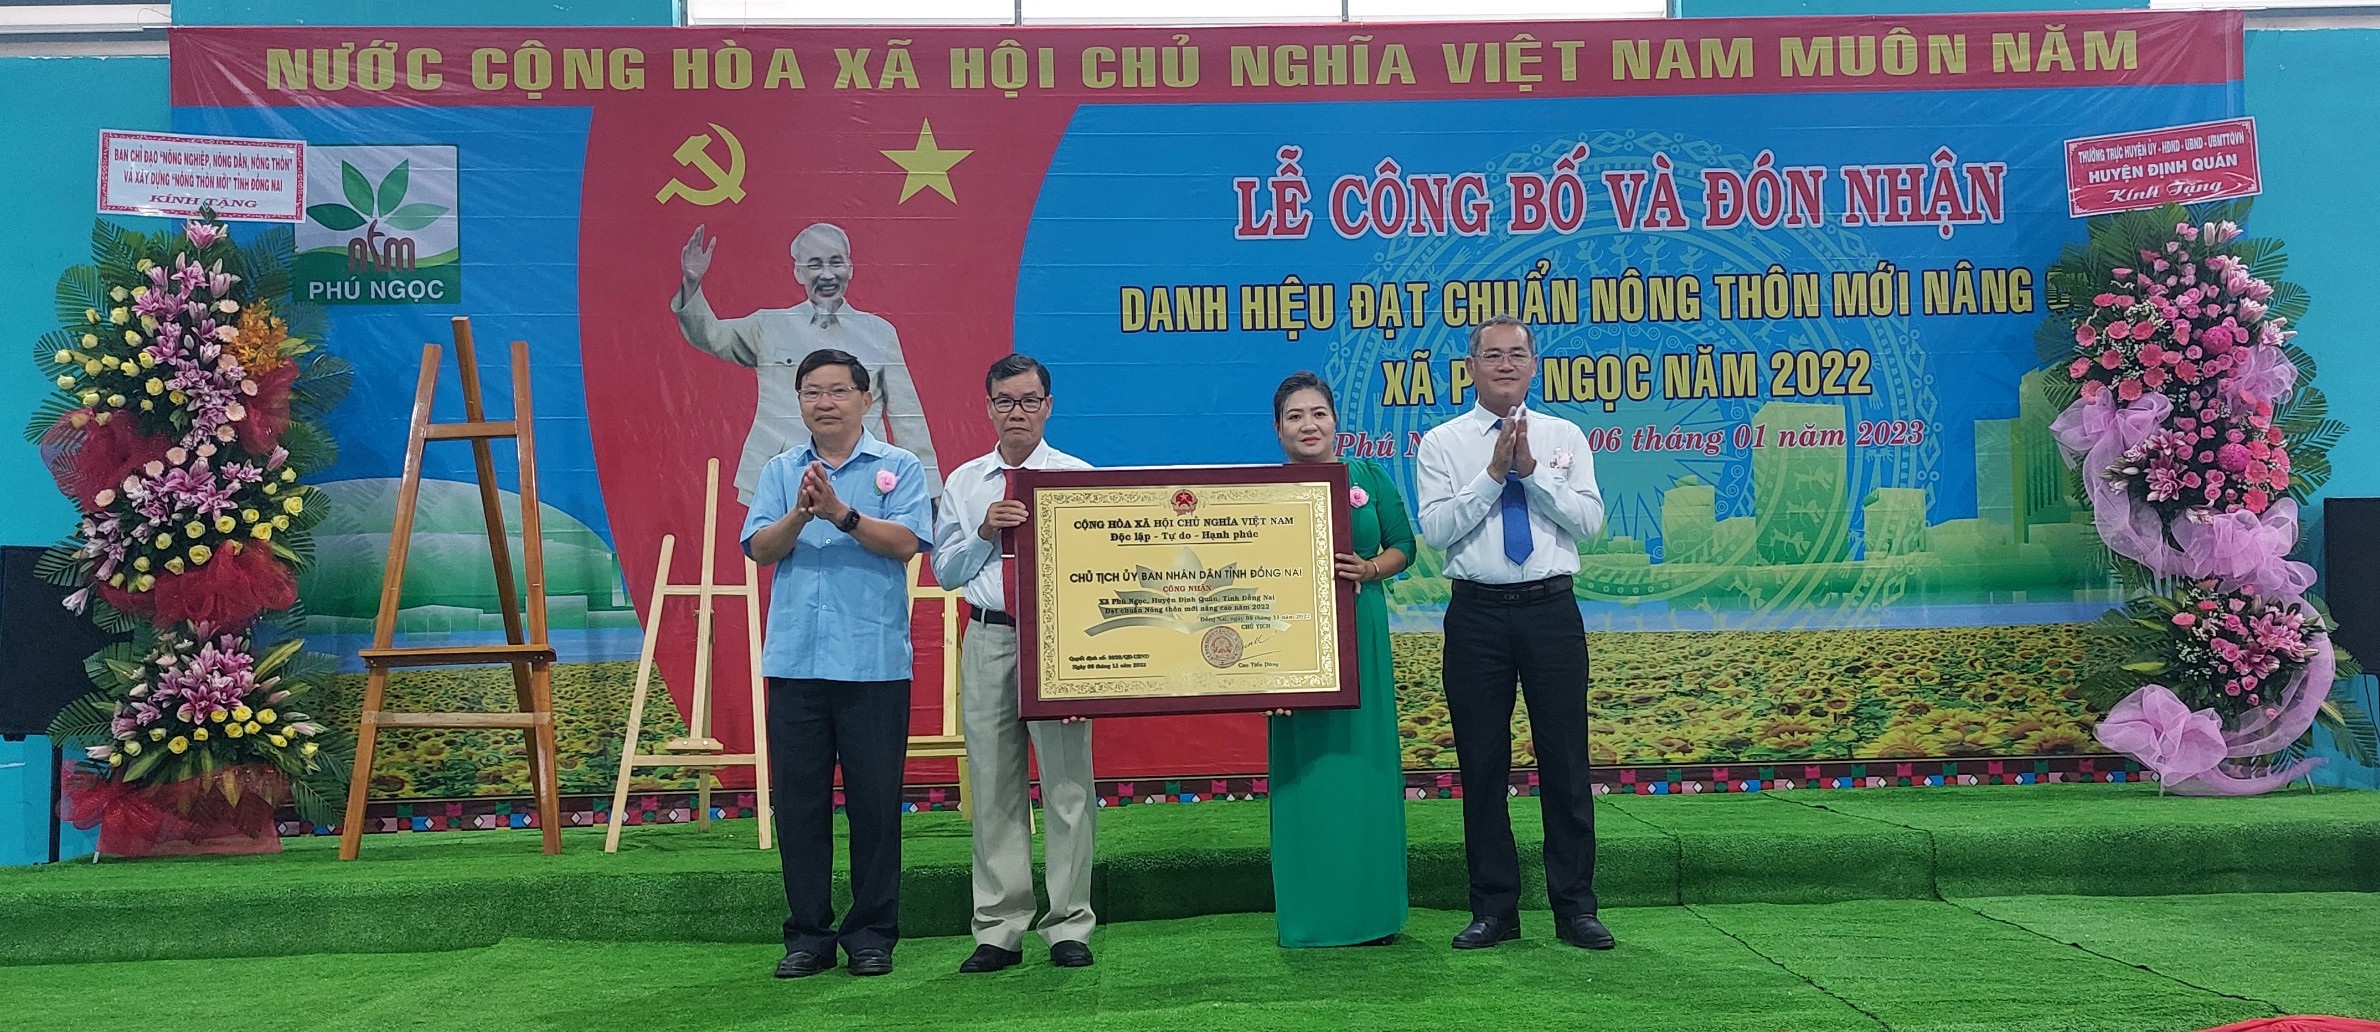 Lãnh đạo xã Phú Ngọc đón nhận bằng công nhận xã Đạt chuẩn nông thôn mới nâng cao.jpg